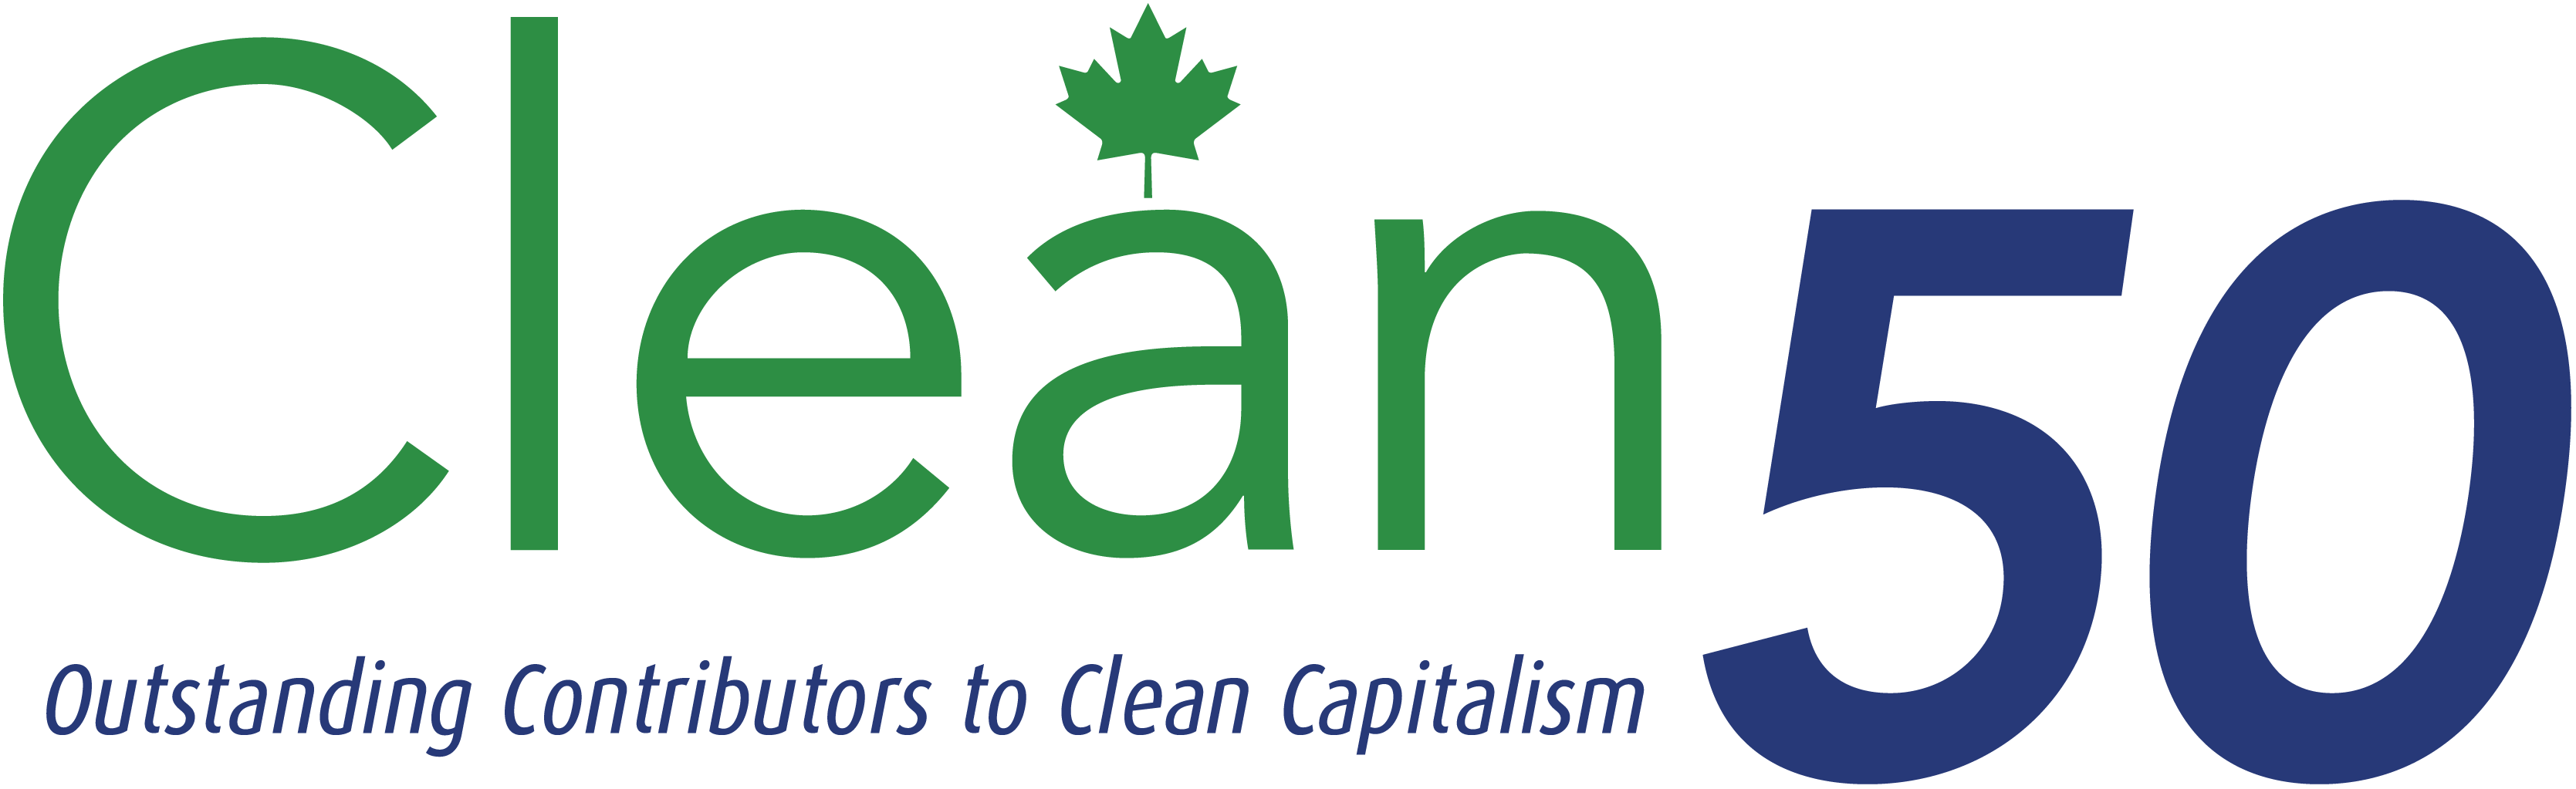 clean50 logo